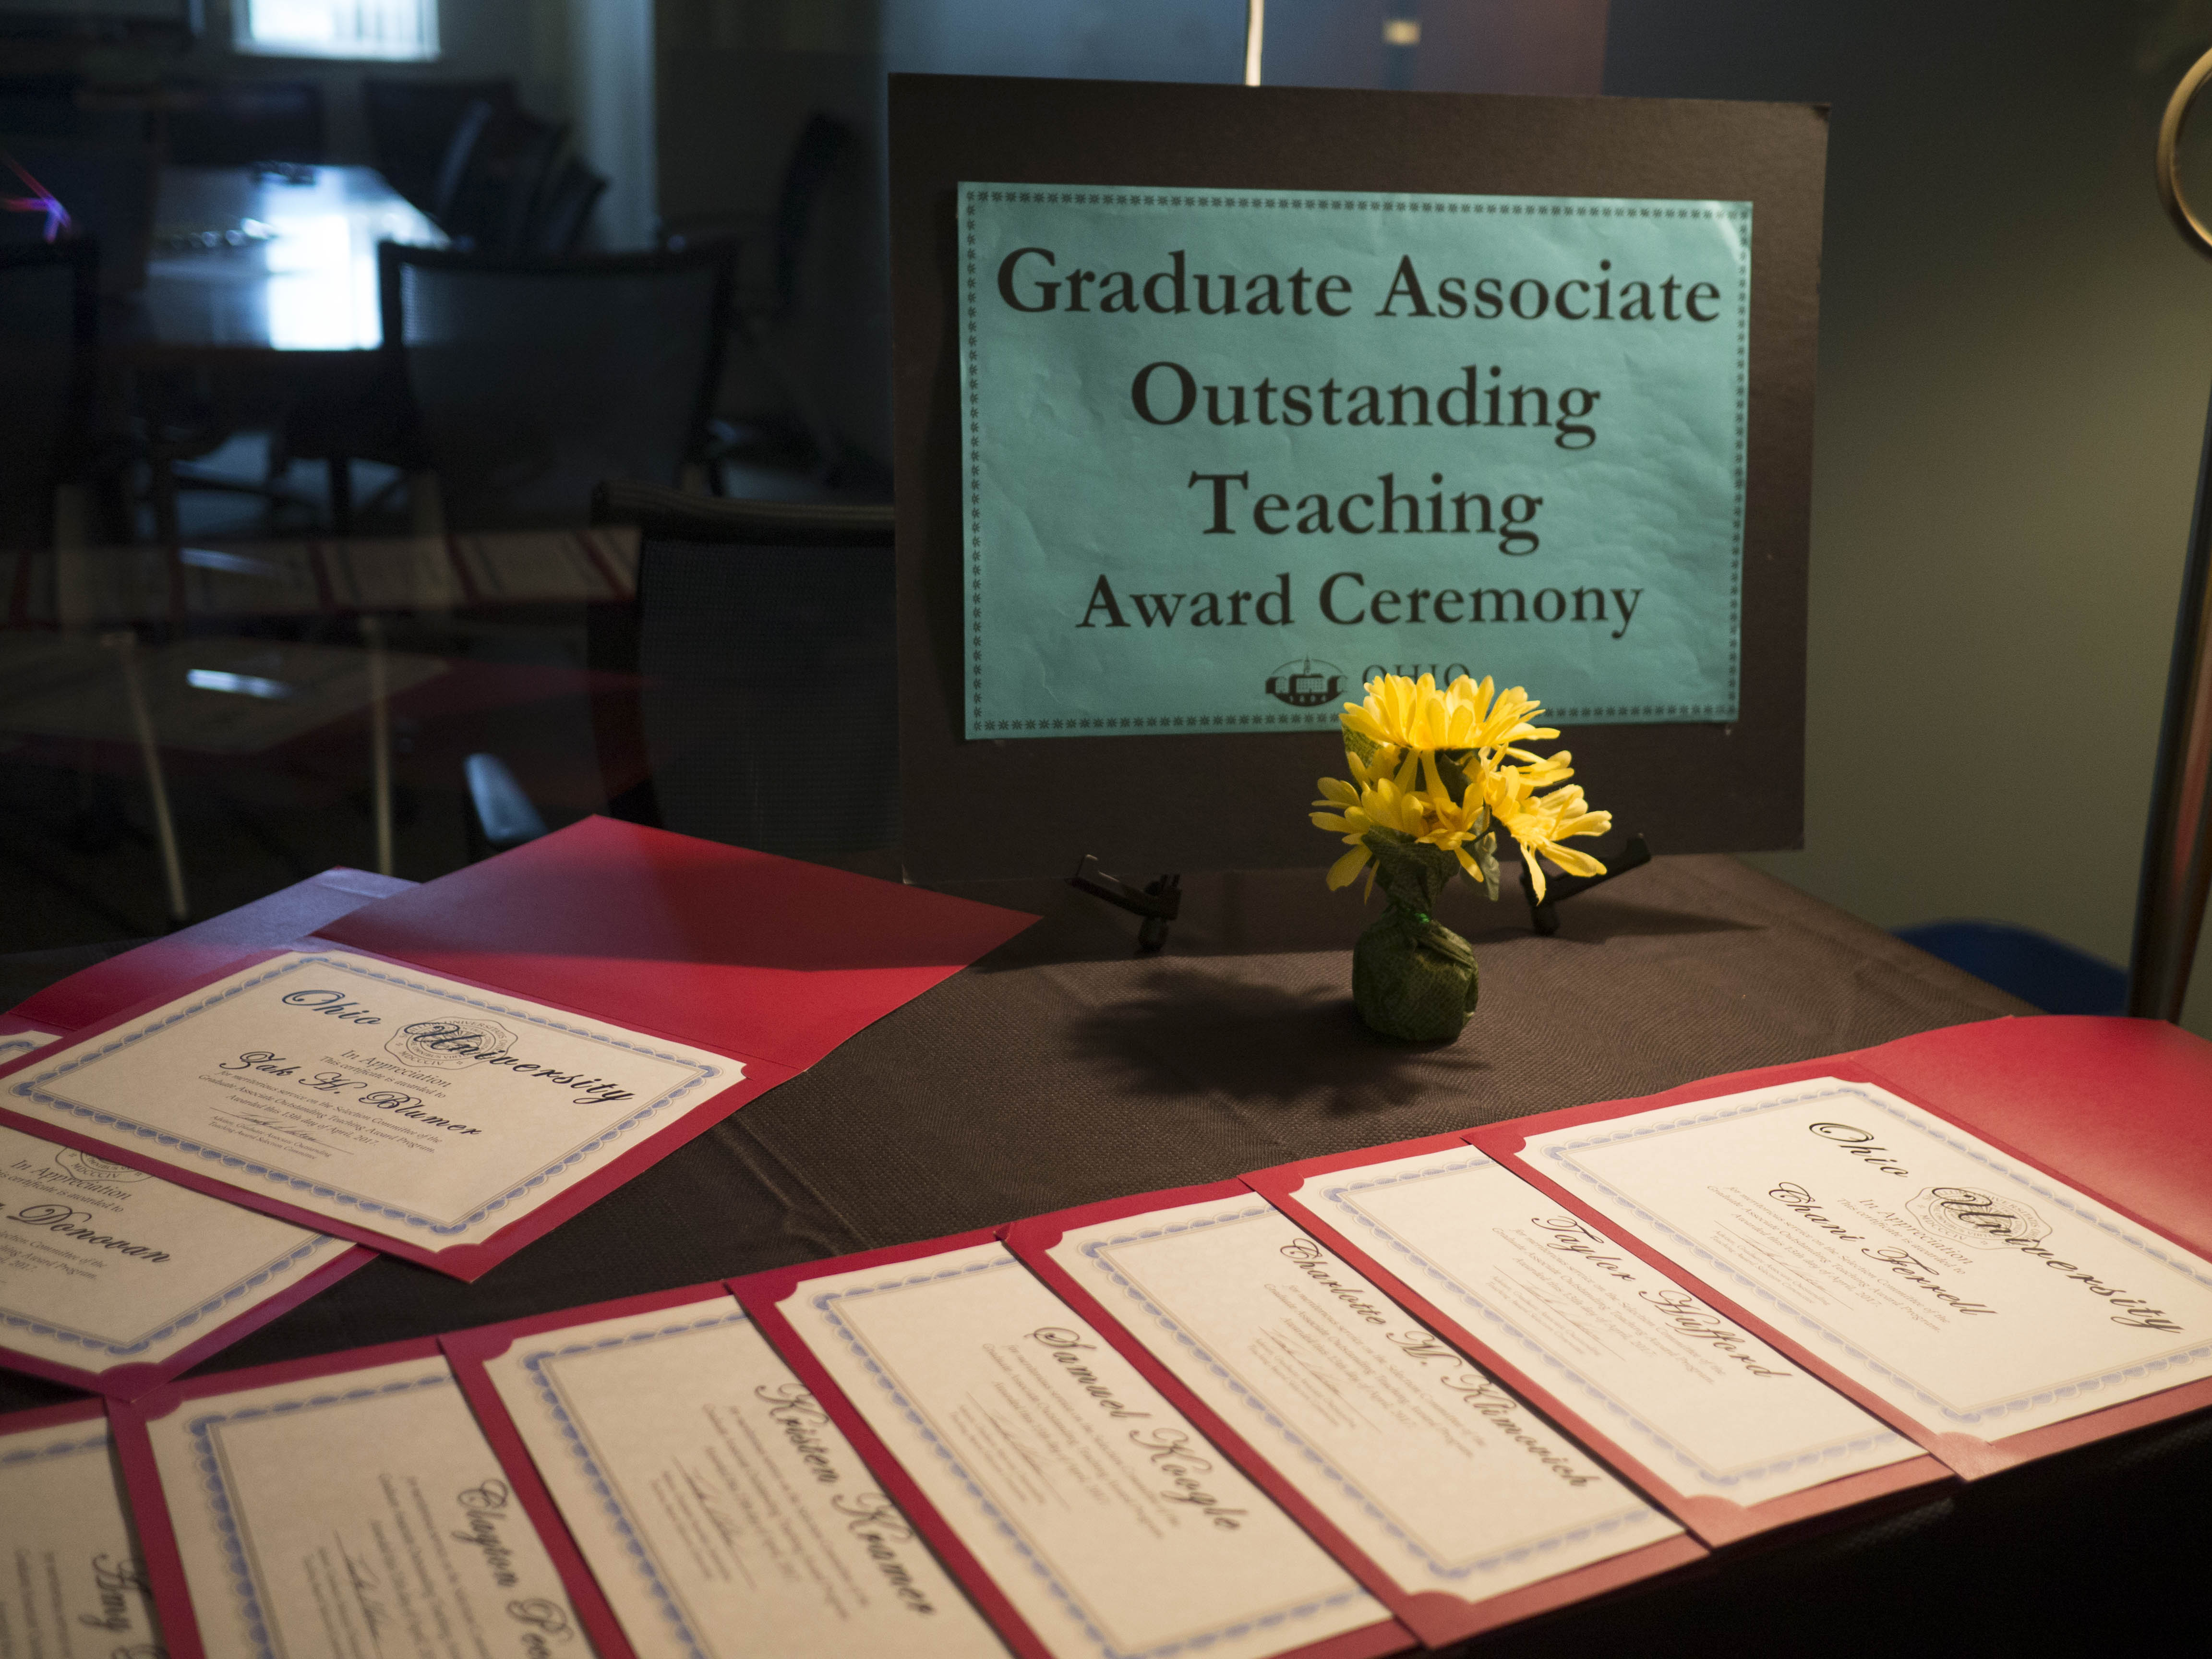 Graduate Associate Outstanding Teaching Awards